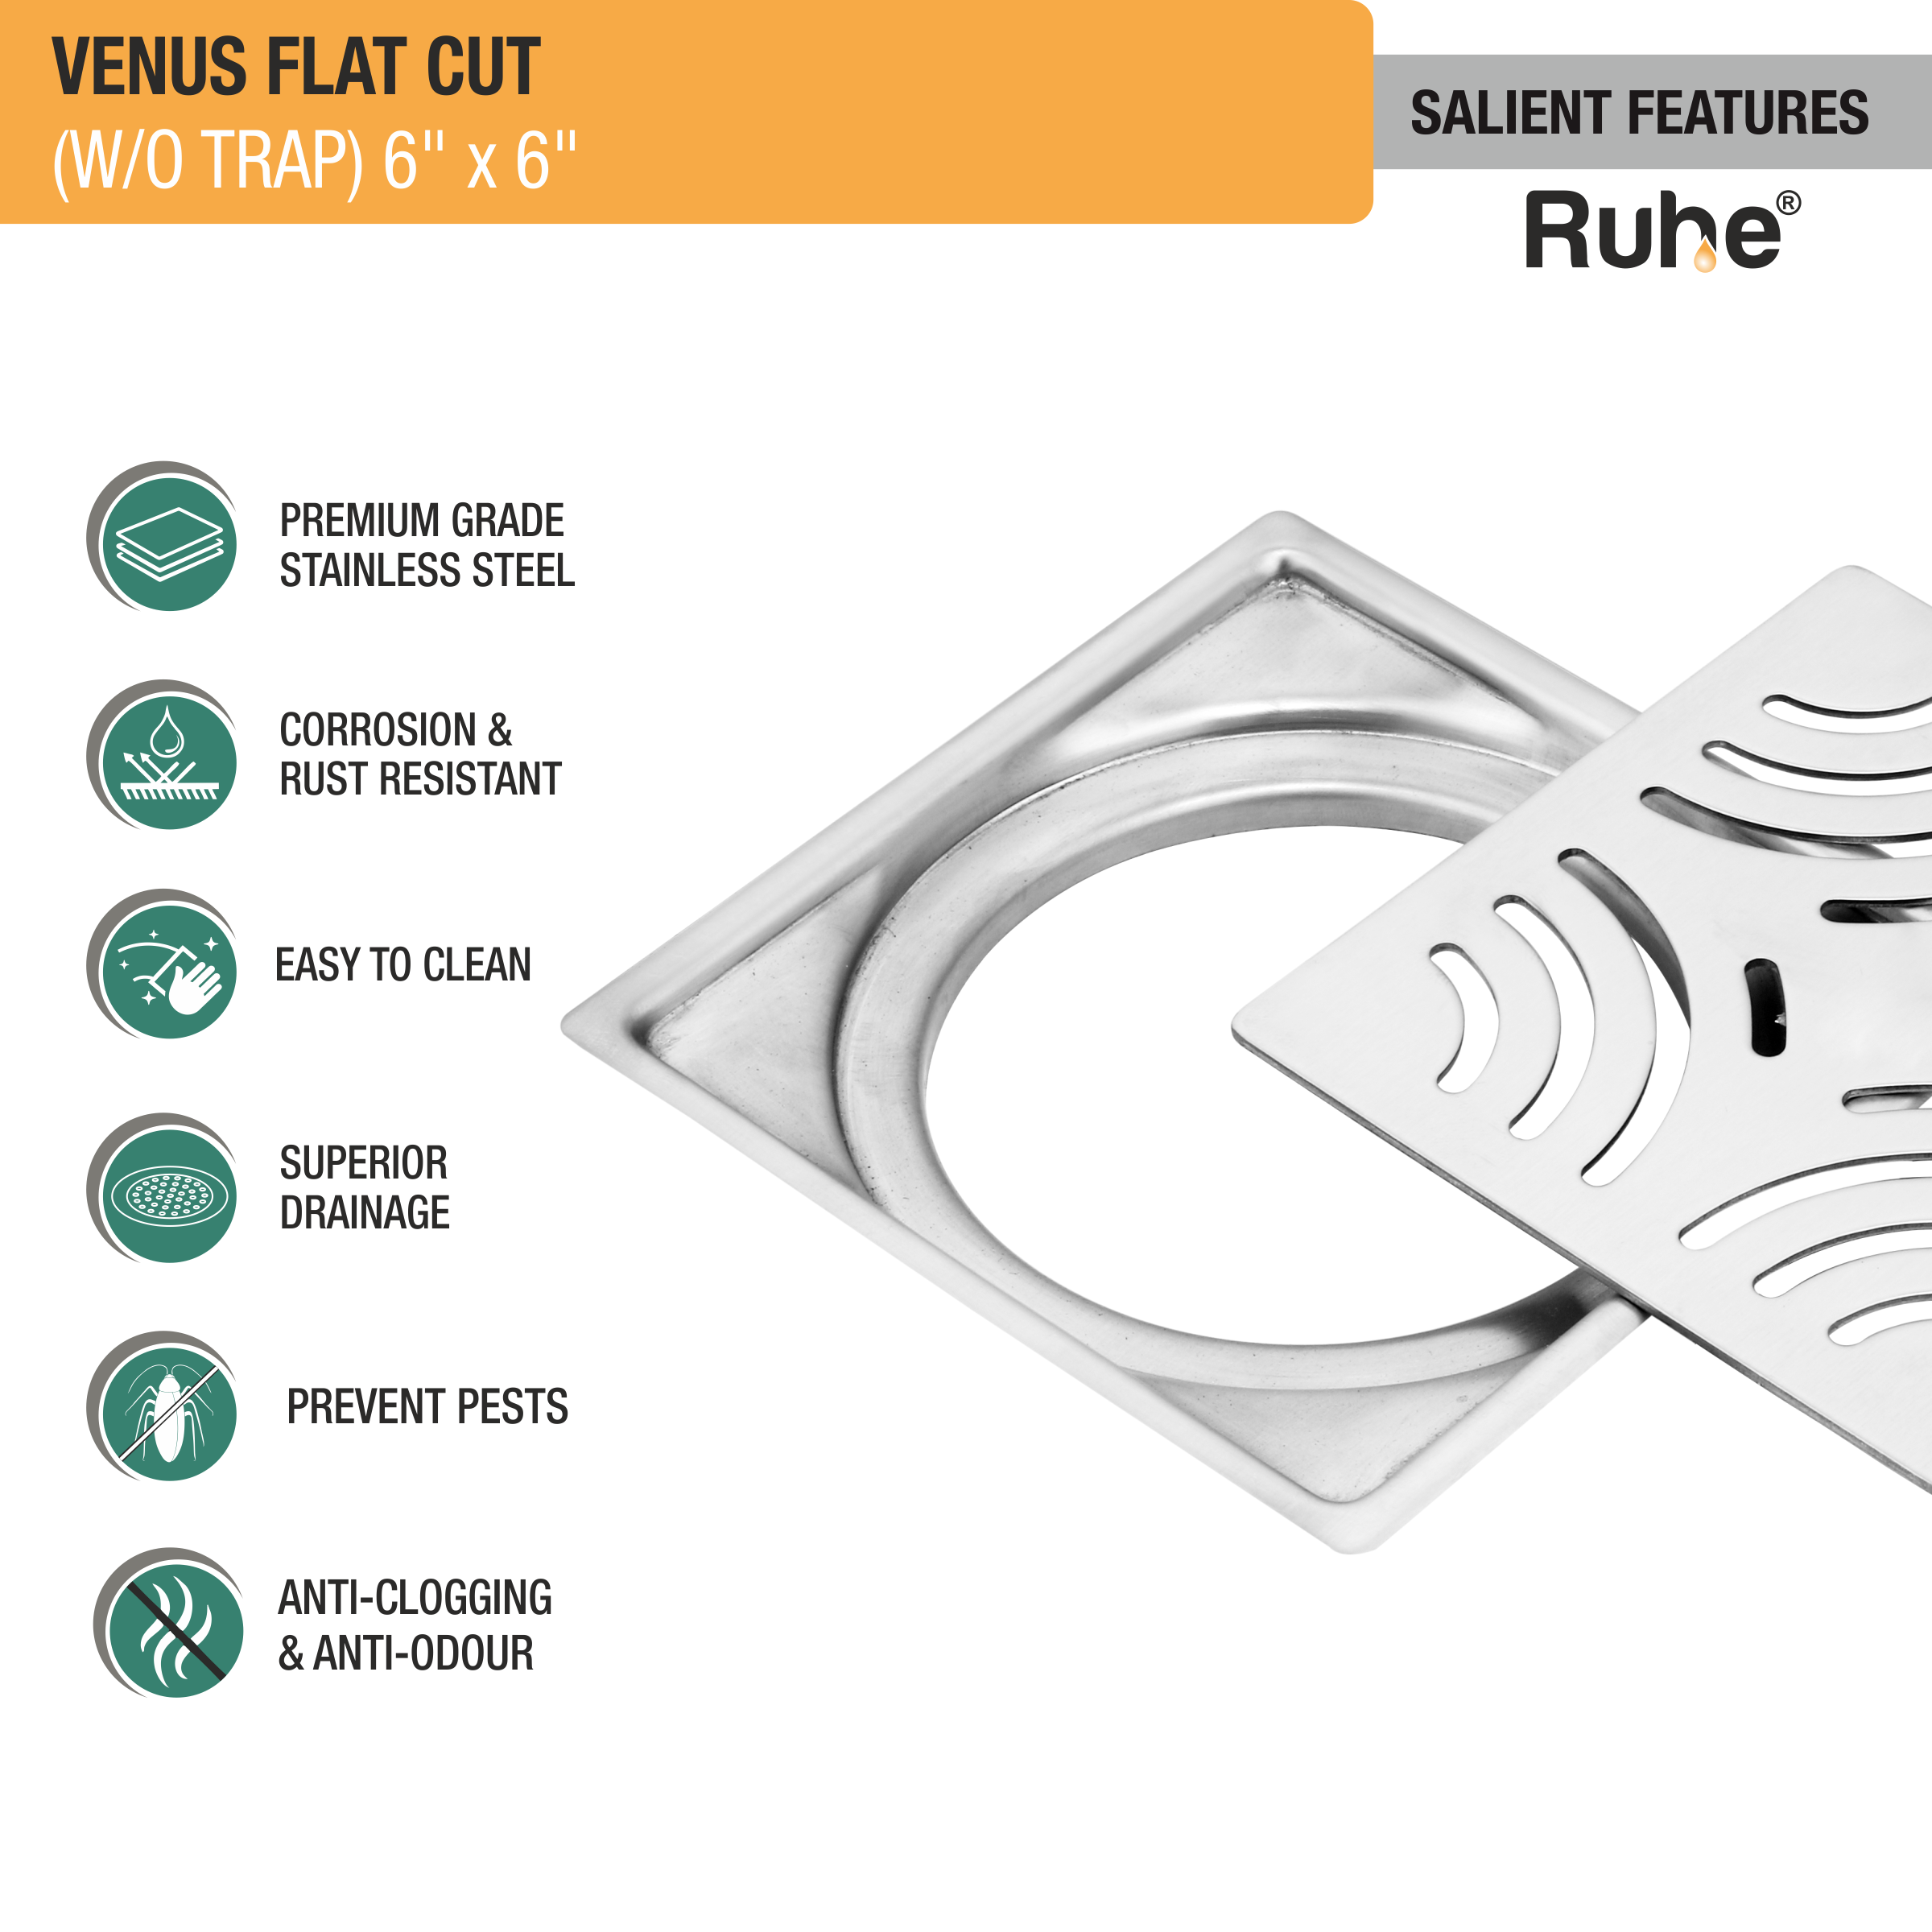 Venus Square Premium Flat Cut Floor Drain (6 x 6 Inches) features